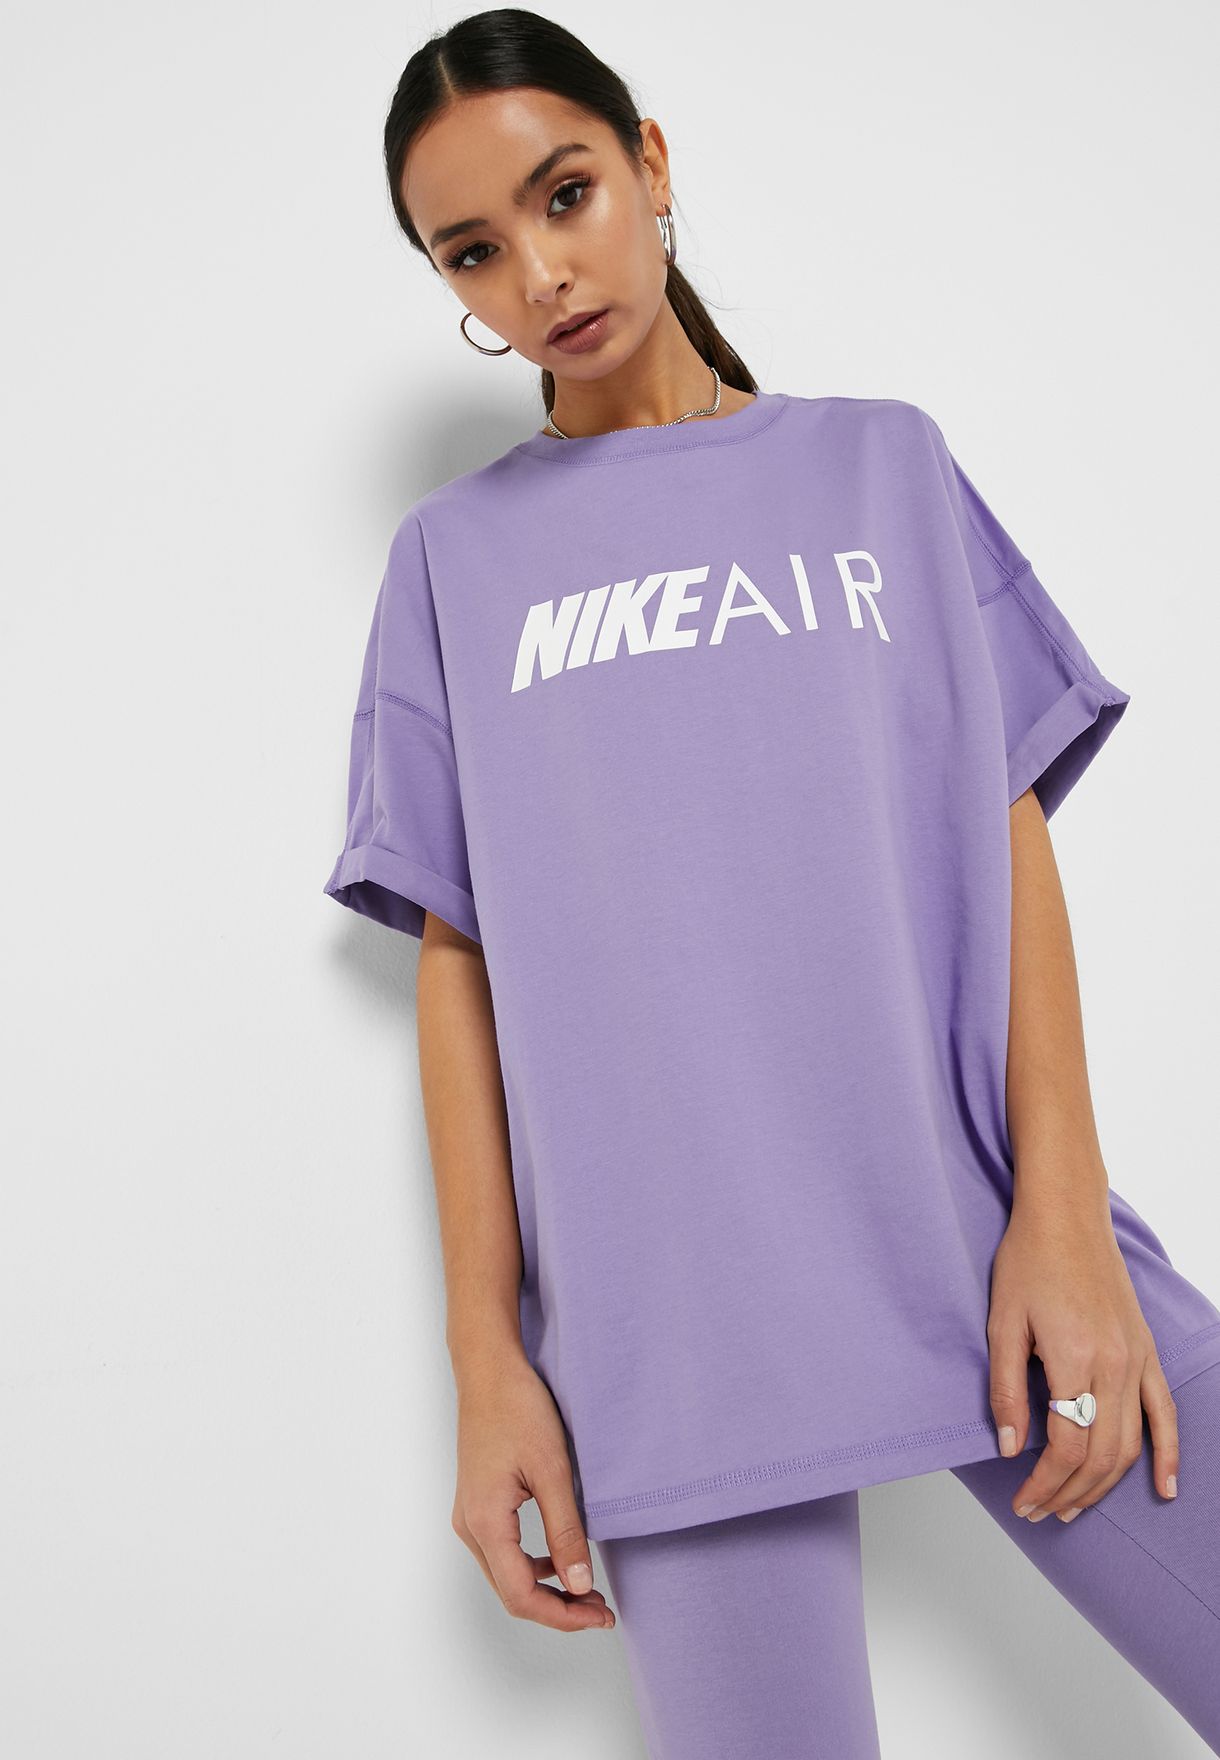 nike air purple shirt